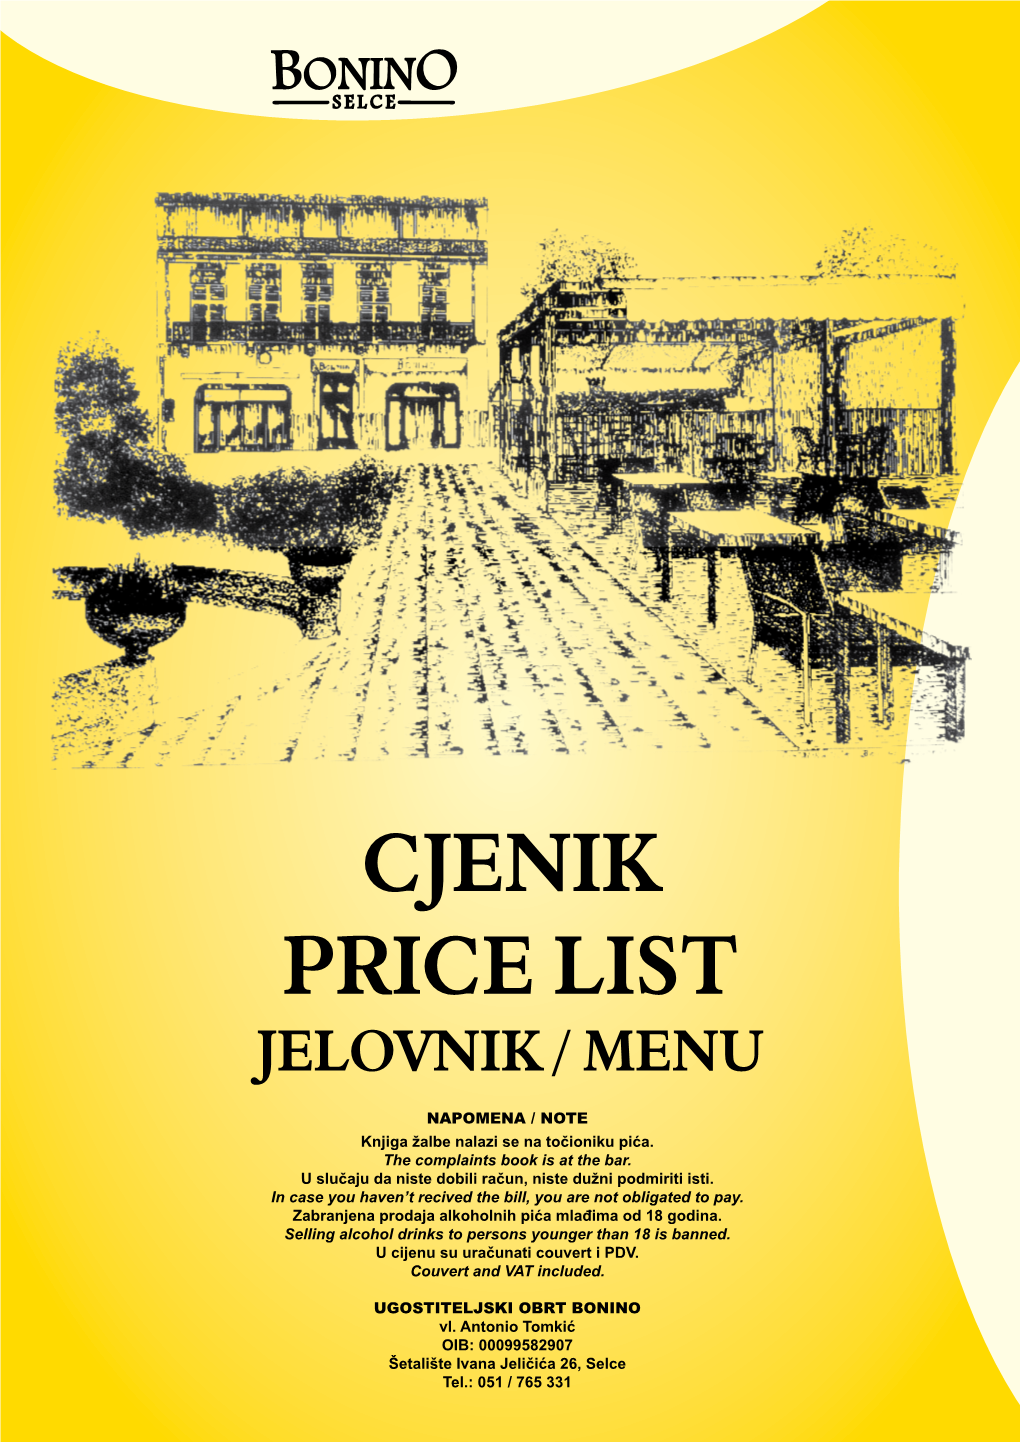 Cjenik Price List Jelovnik / Menu